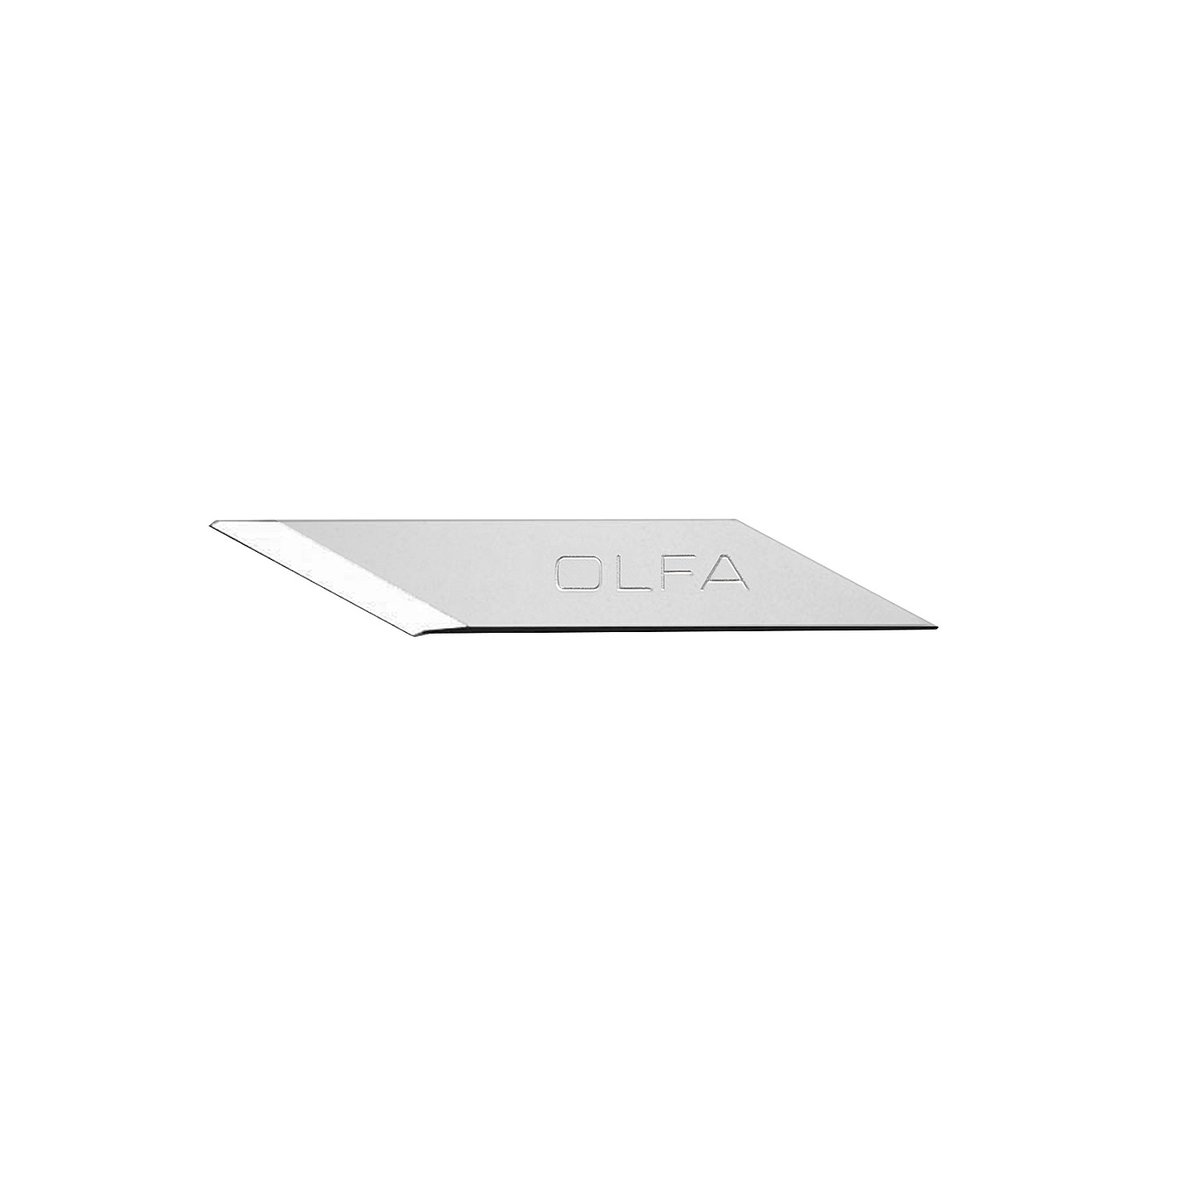 OLFA 4 мм, лезвие специальное для ножа OL-KB-5